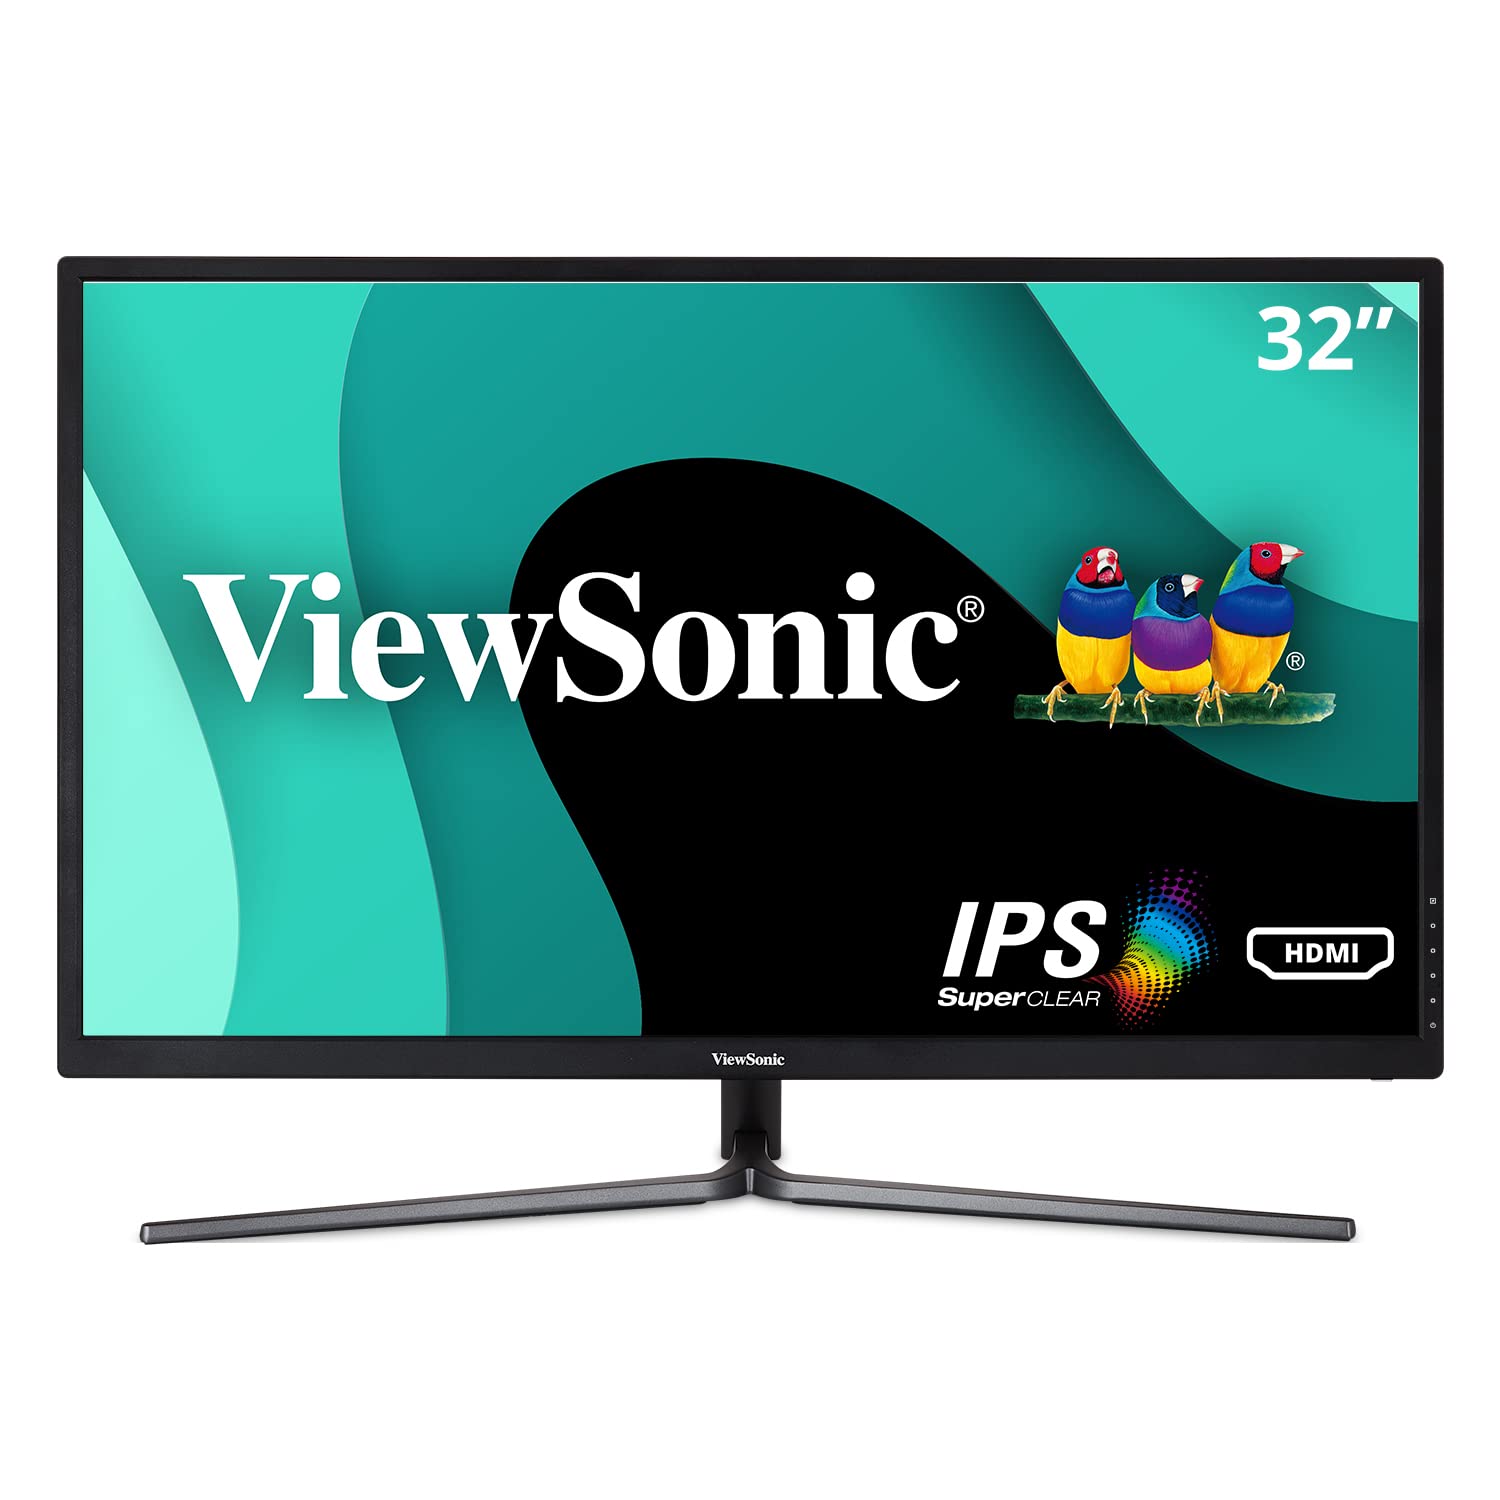 Viewsonic VX3211-2K-MHD 32 インチ IPS WQHD 1440p モニター、99% sRGB カラーカバー率 HDMI VGA および DisplayPort 付き、ブラック